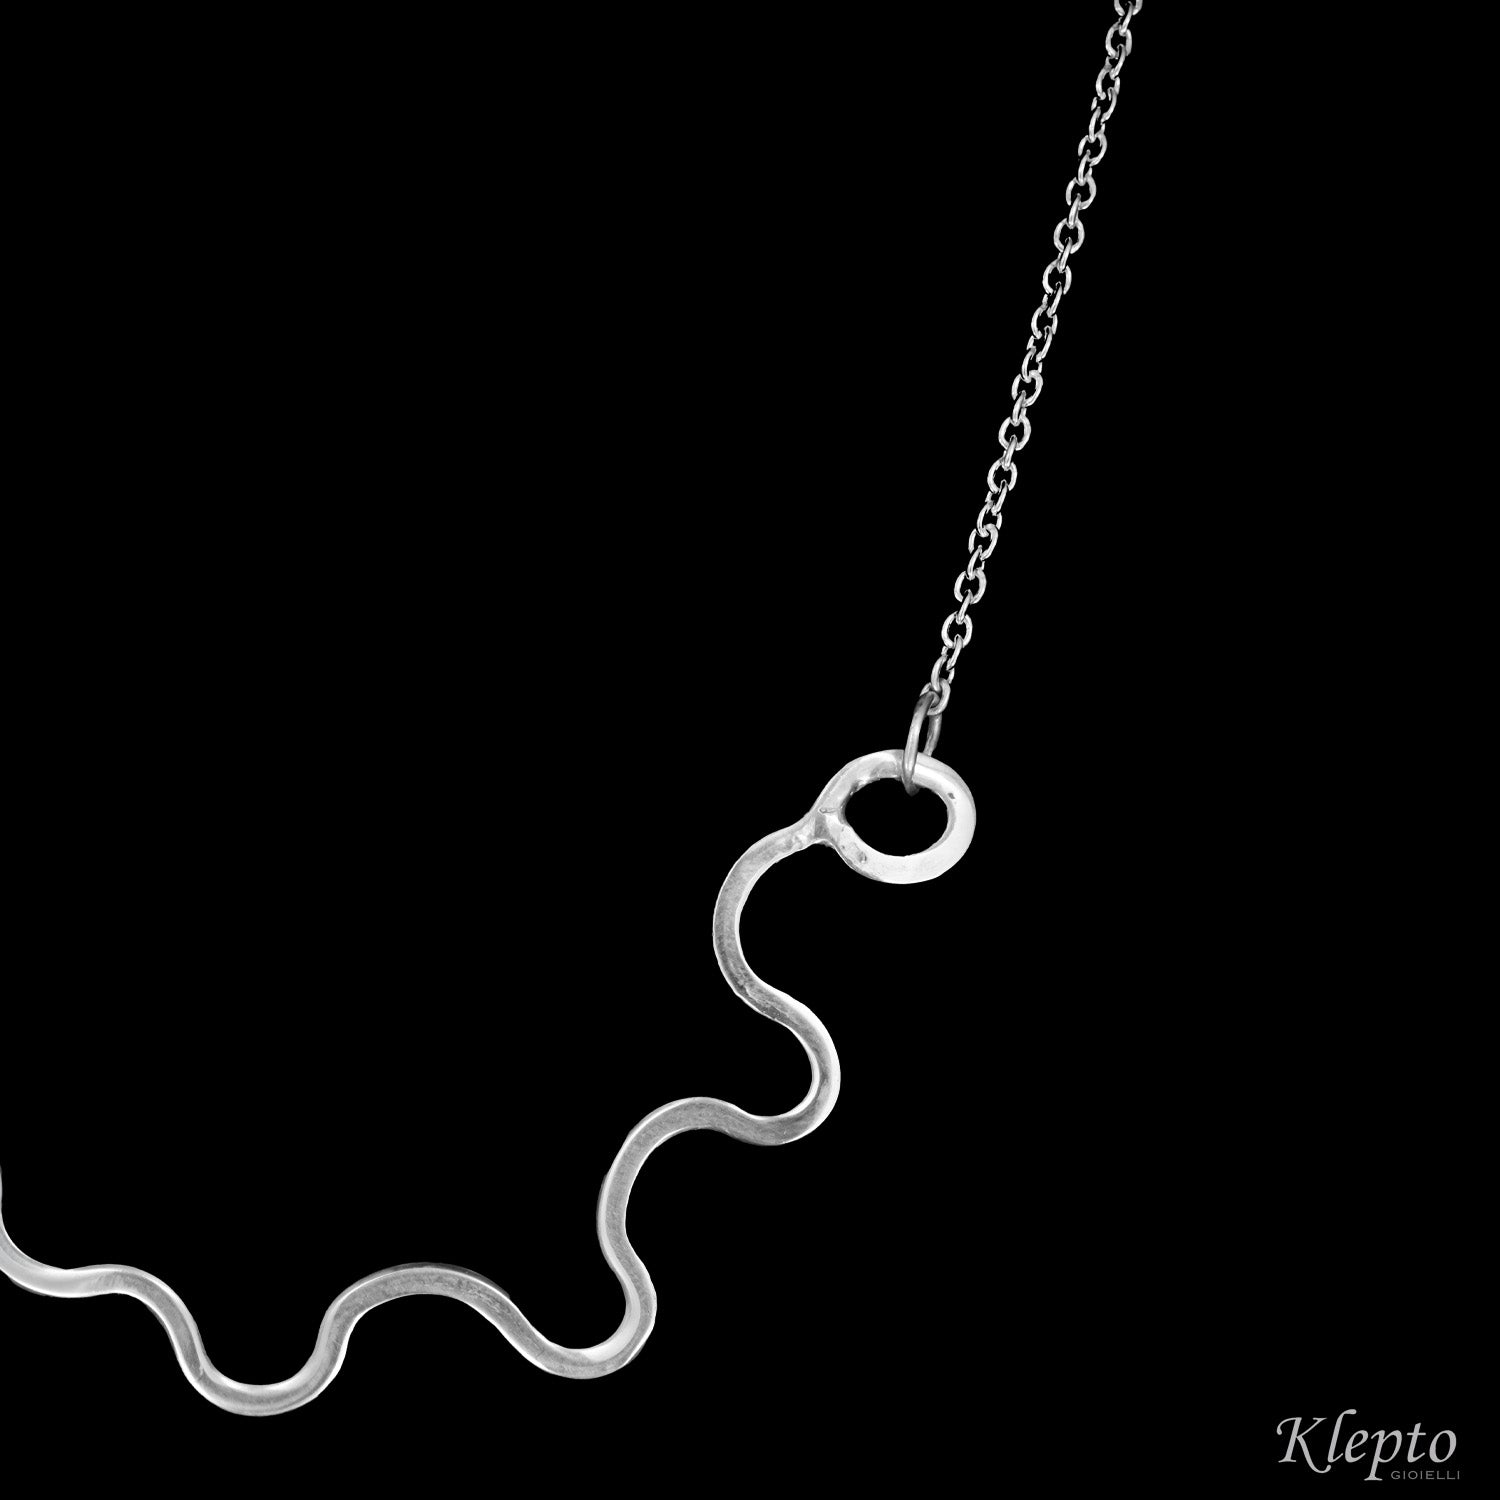 Silnova® silver necklace with wavy wire